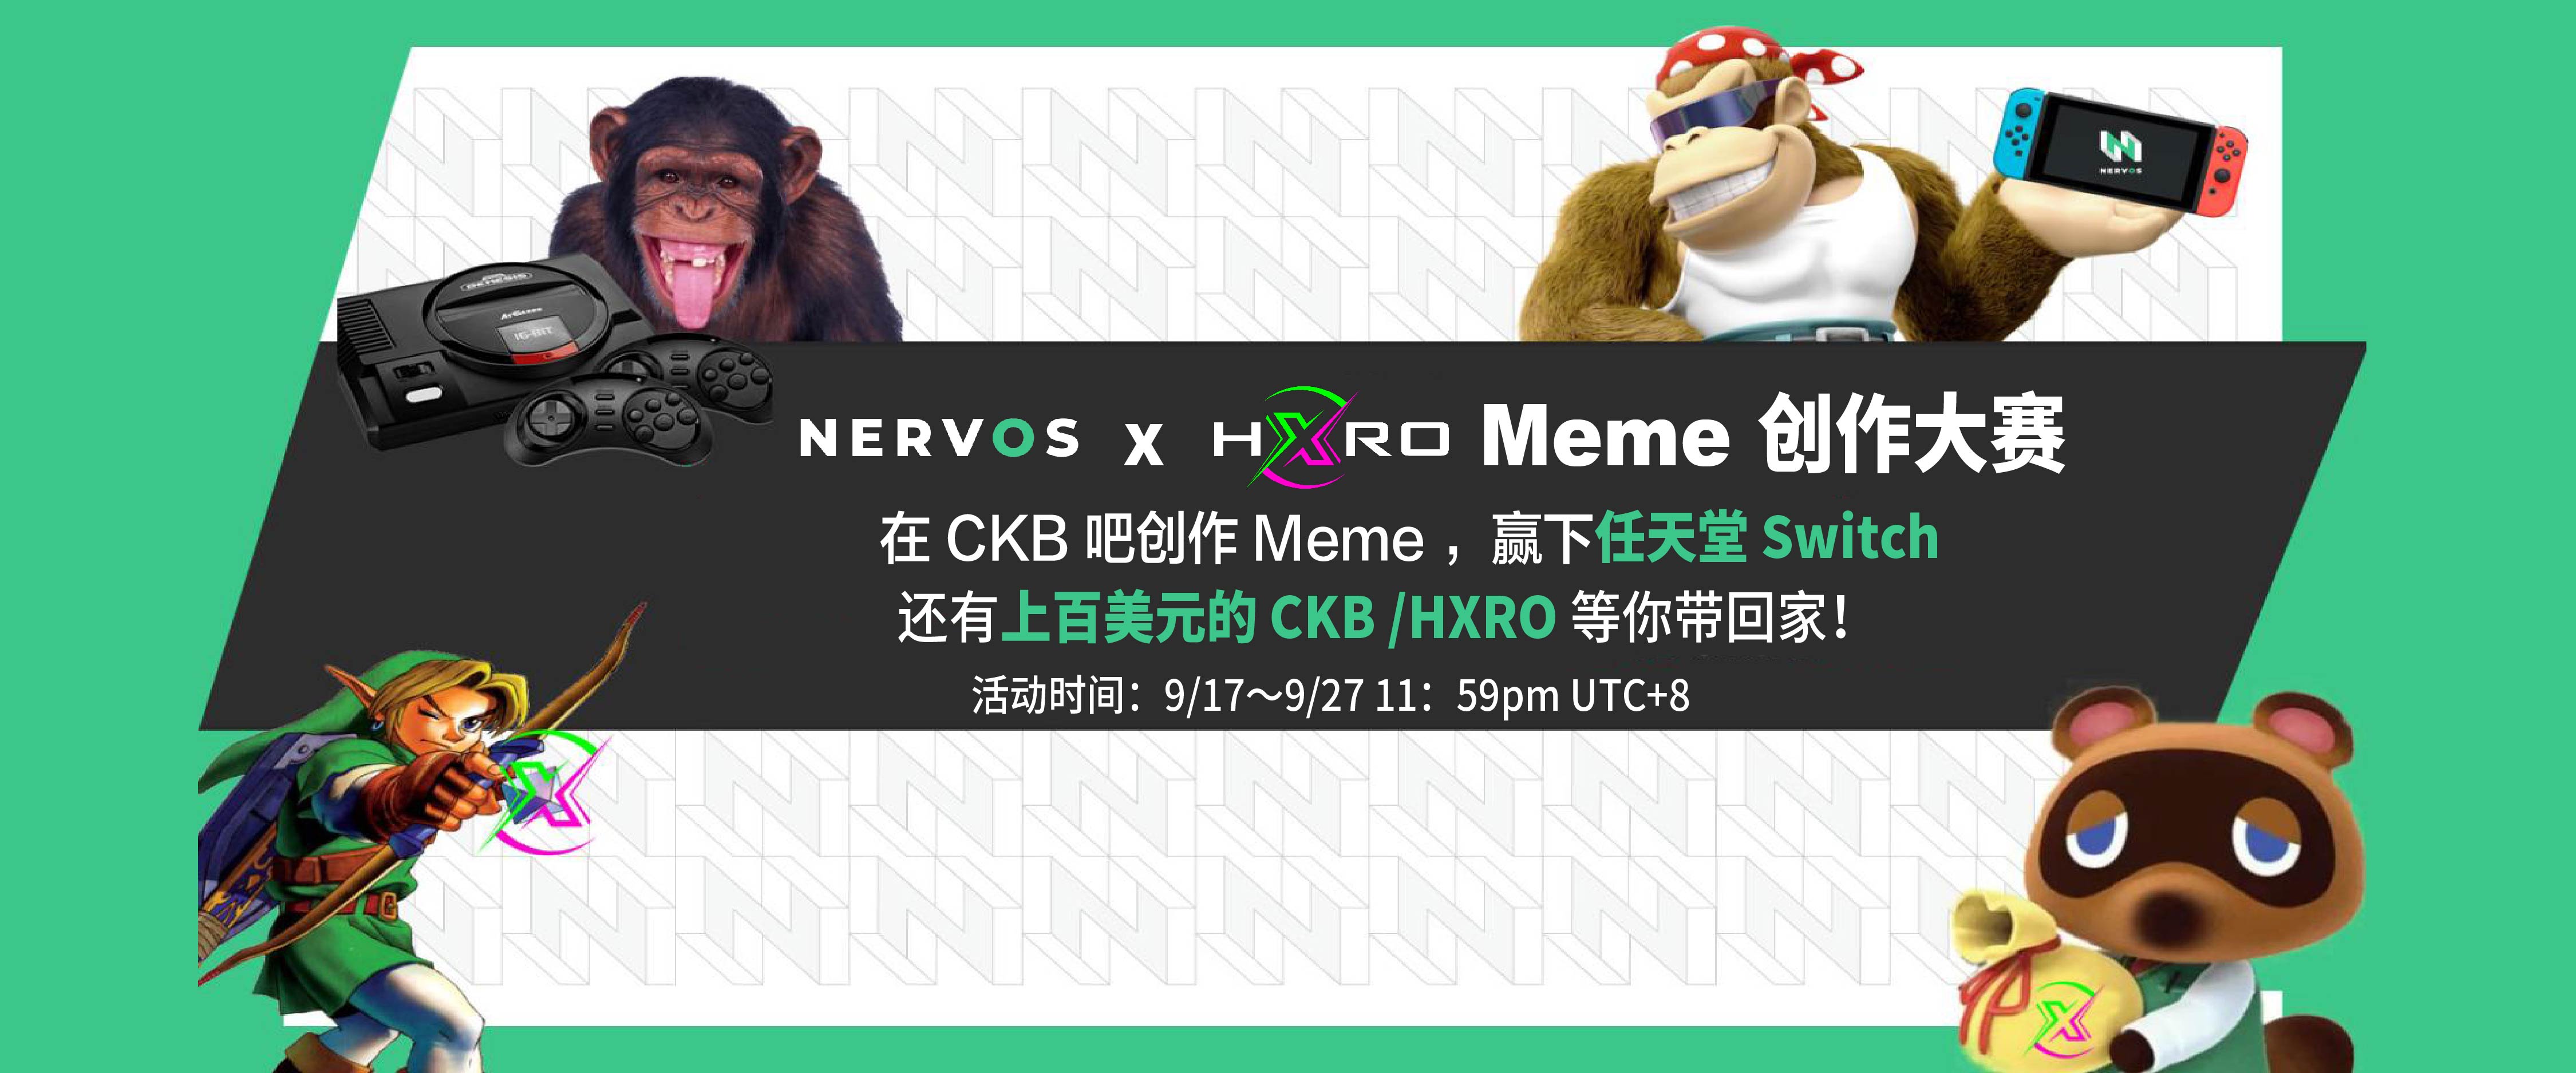 参加 Nervos x Hxro Meme 创作大赛，赢任天堂 Switch 还